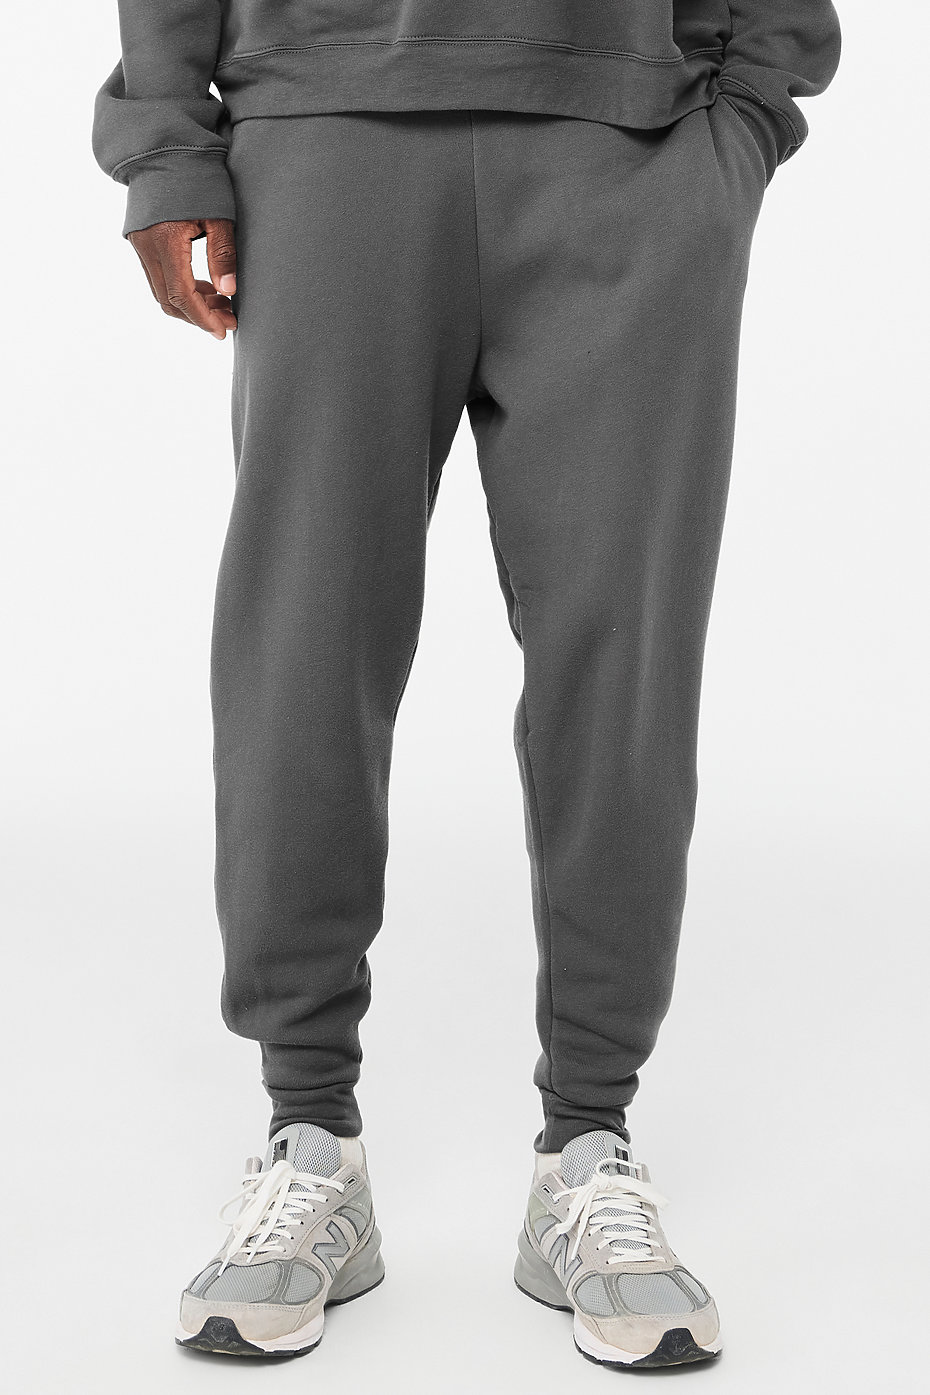 Ankle Pant Suit Design Wholesale Website